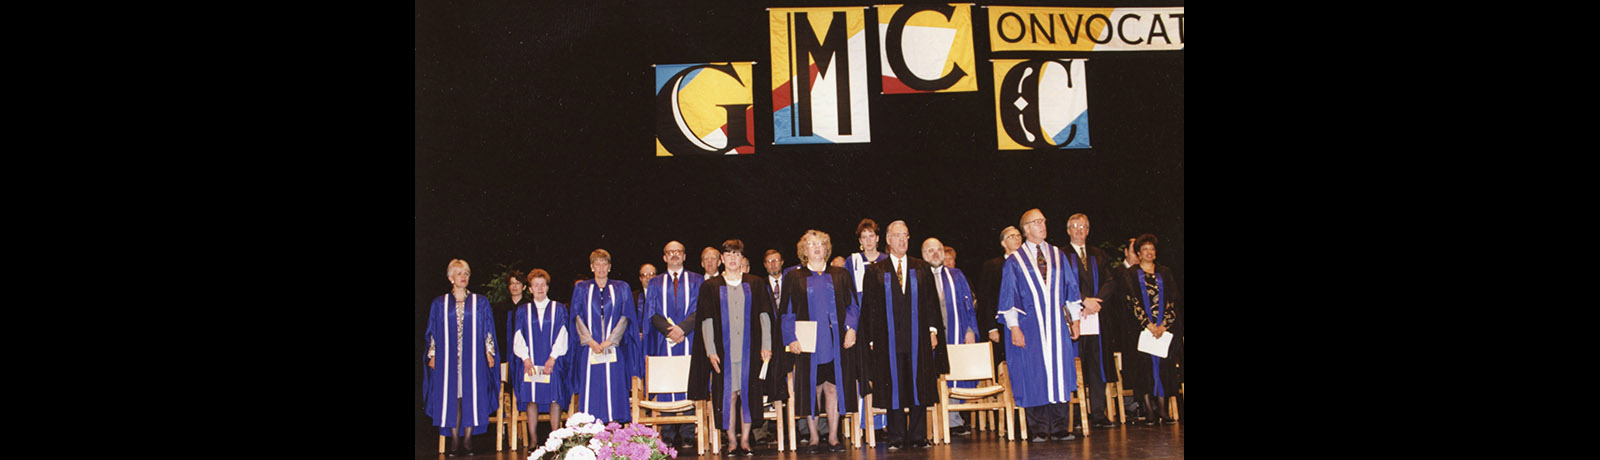 MacEwan convocation 1991